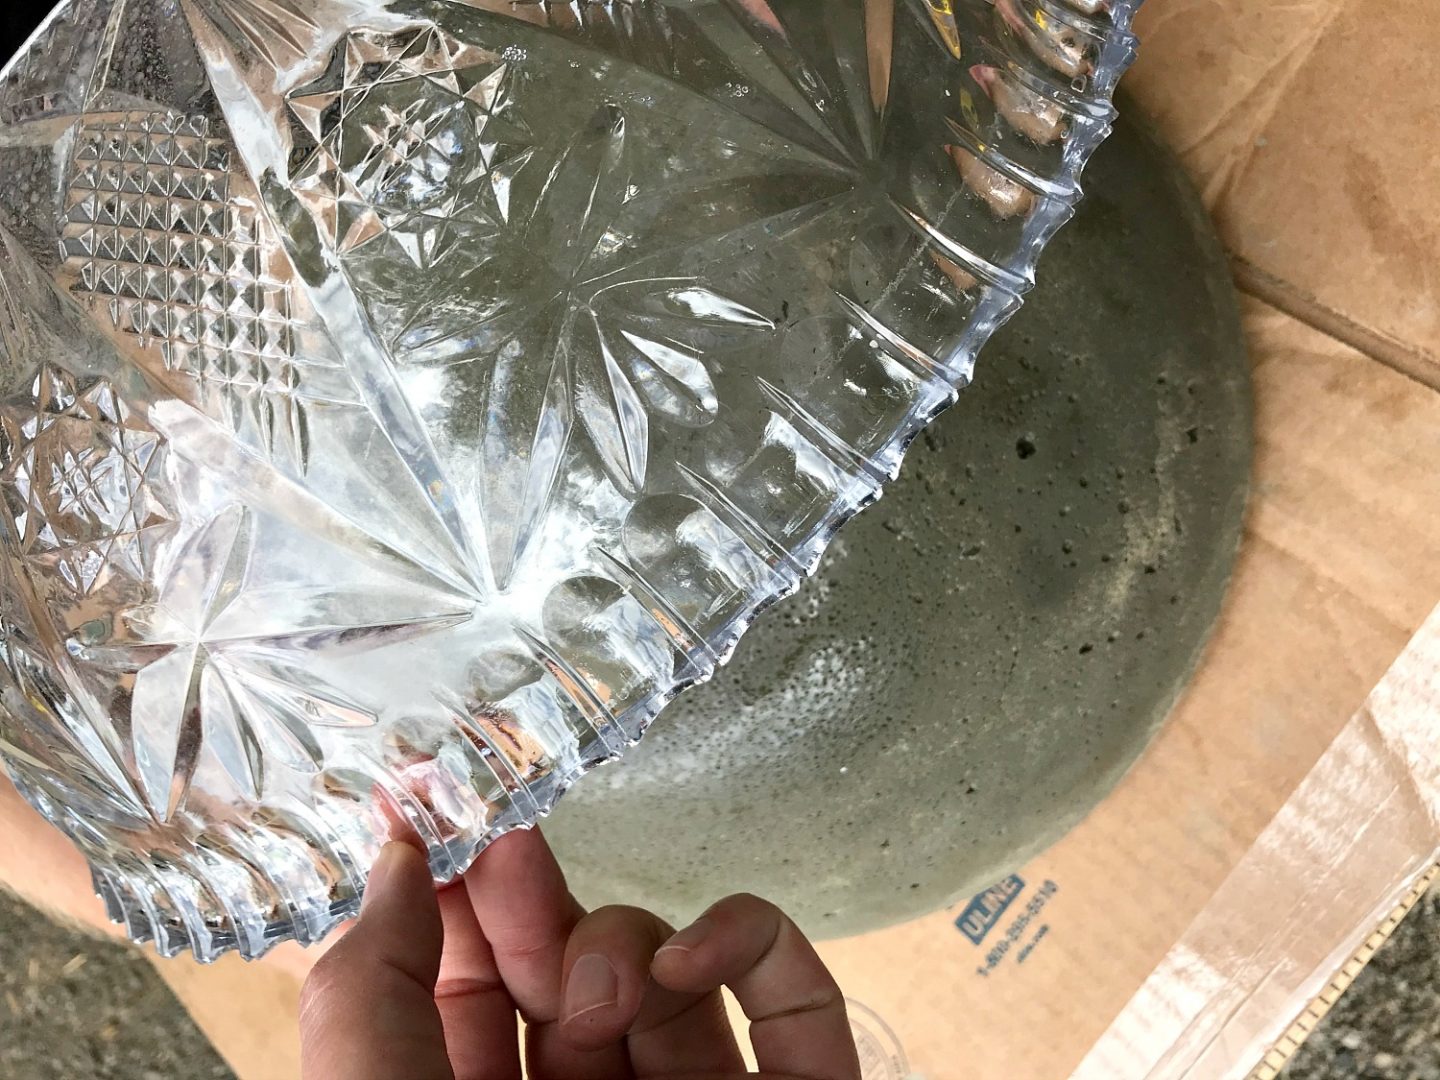 How to Make a Concrete Bowl